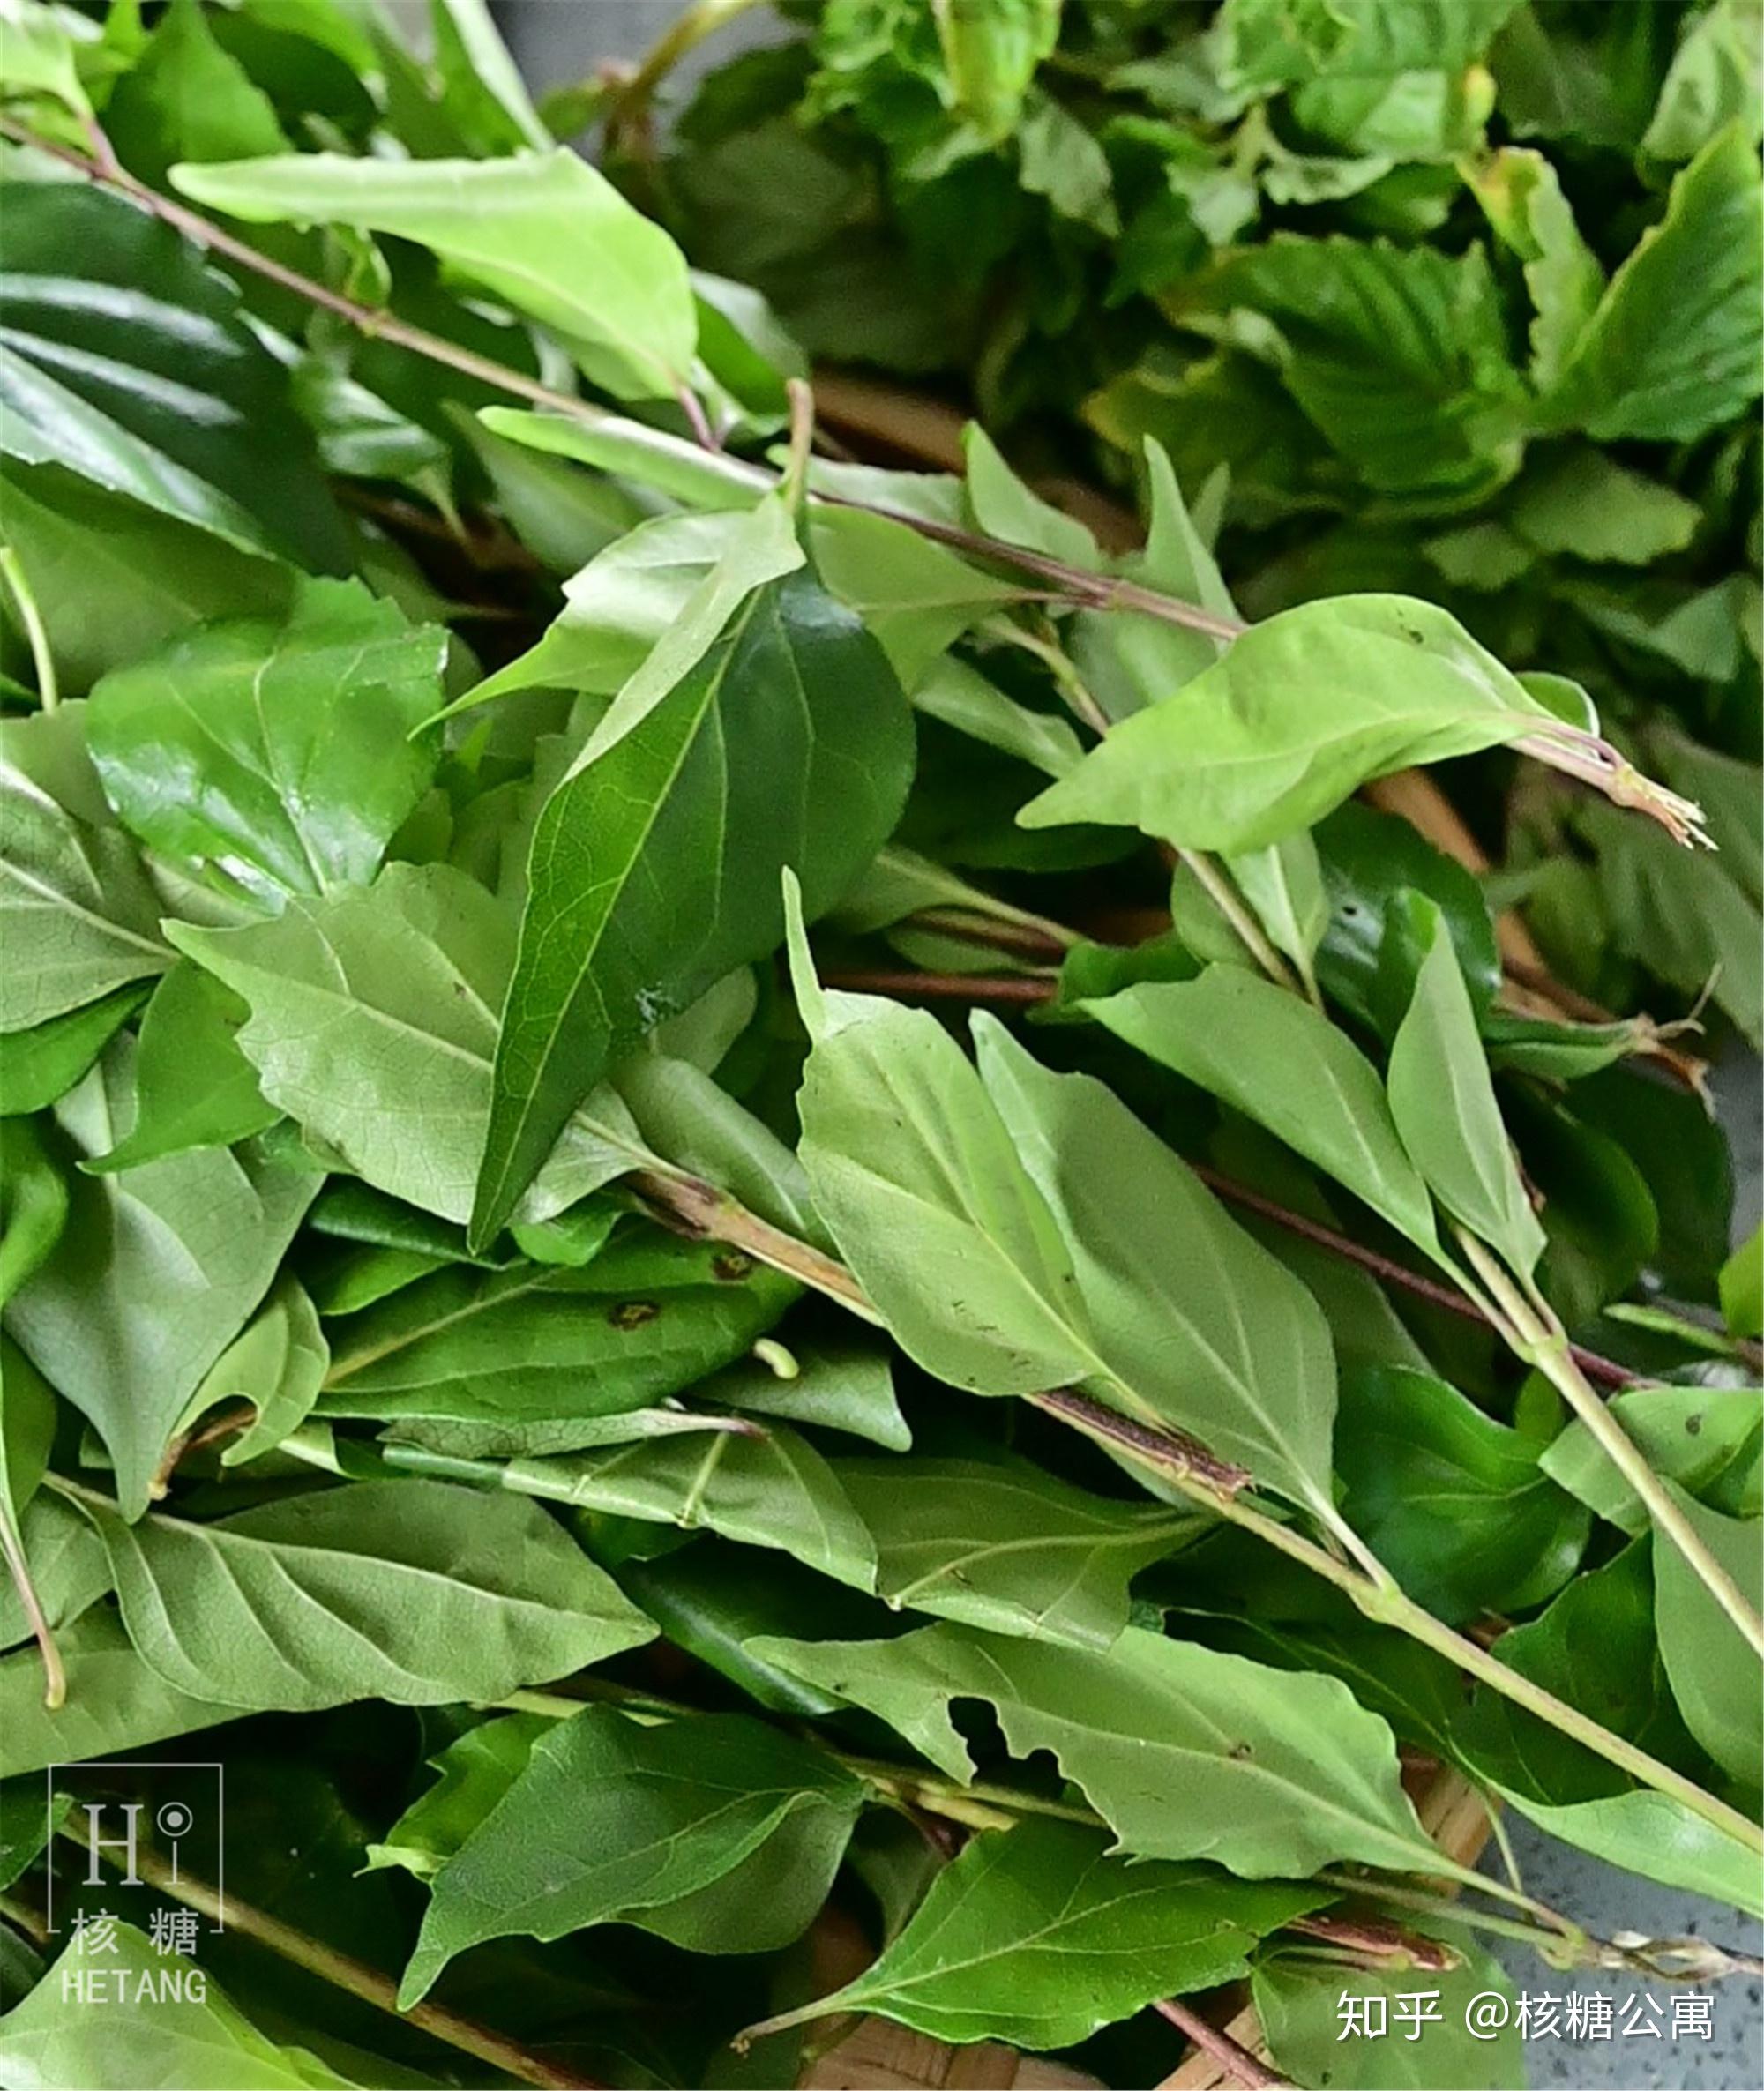 马鞭科豆腐柴属植物,也叫斑鸠树,臭黄荆